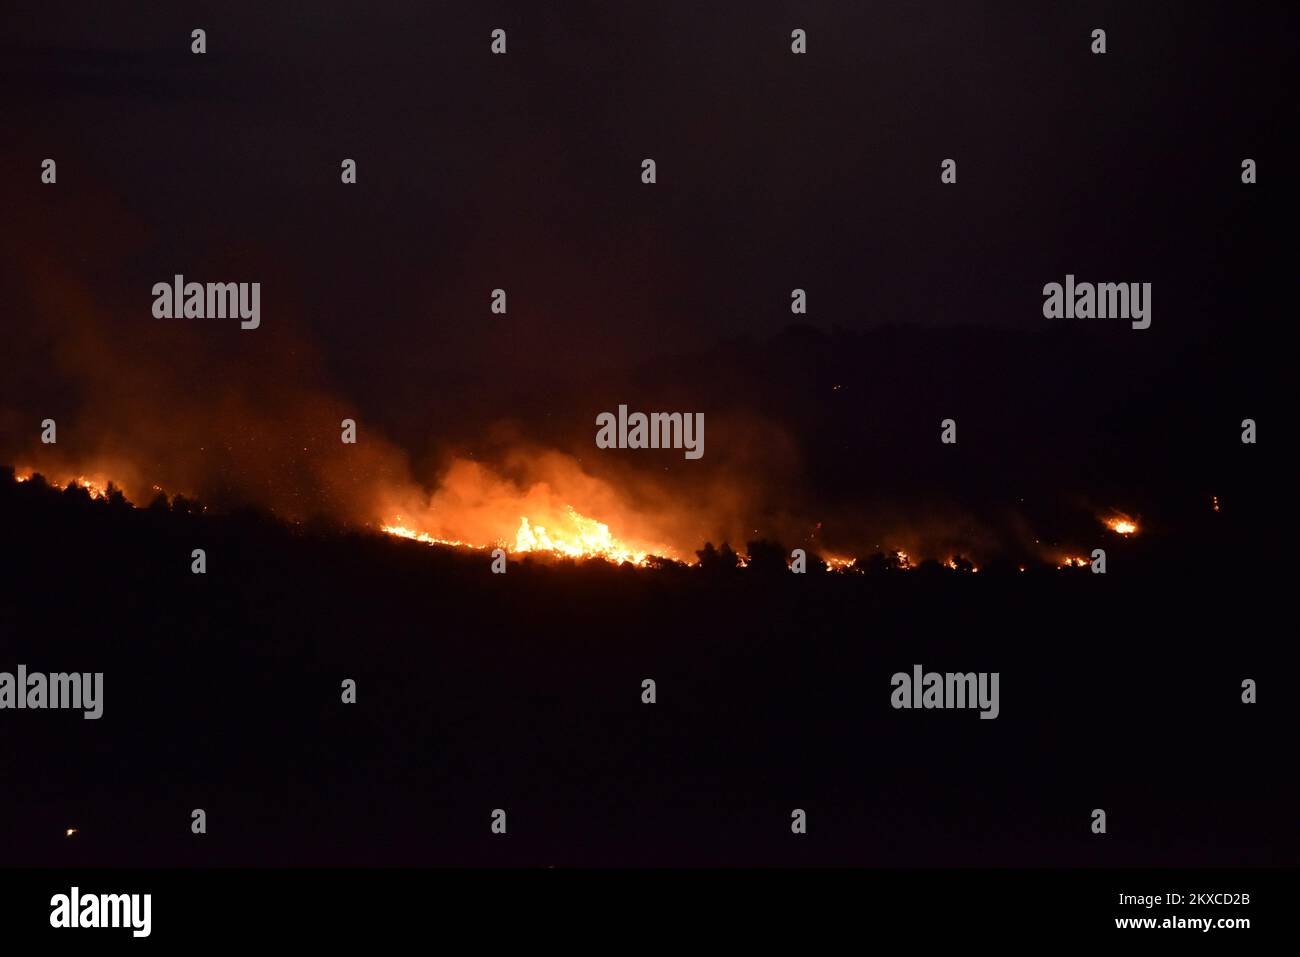 28.07.2019., Bilice - Feuer noch aktiv, Feuerwehrleute und Löschflugzeuge versuchen, das Feuer unter Kontrolle zu halten. Foto: Hrvoje Jelavic/PIXSELL Stockfoto